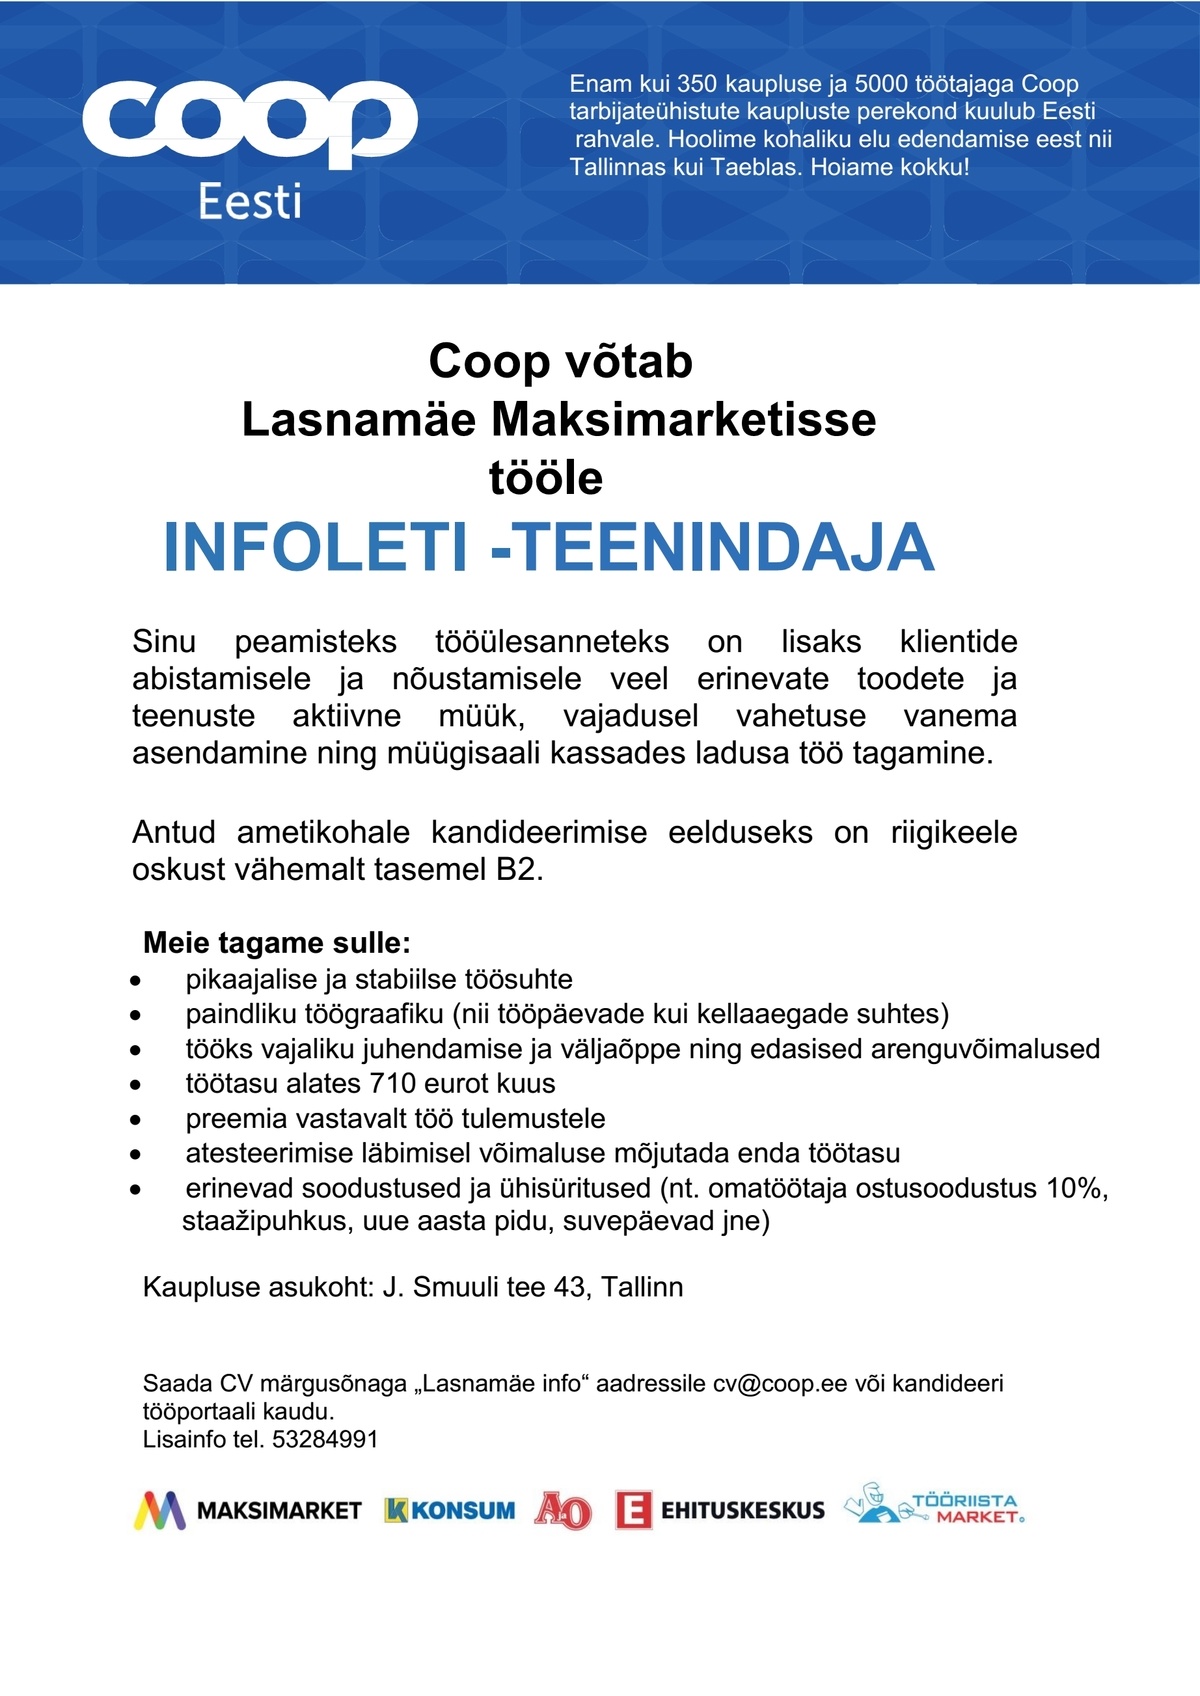 Coop Kaubanduse AS Infoleti-teenindaja (Lasnamäe Maksimarket)